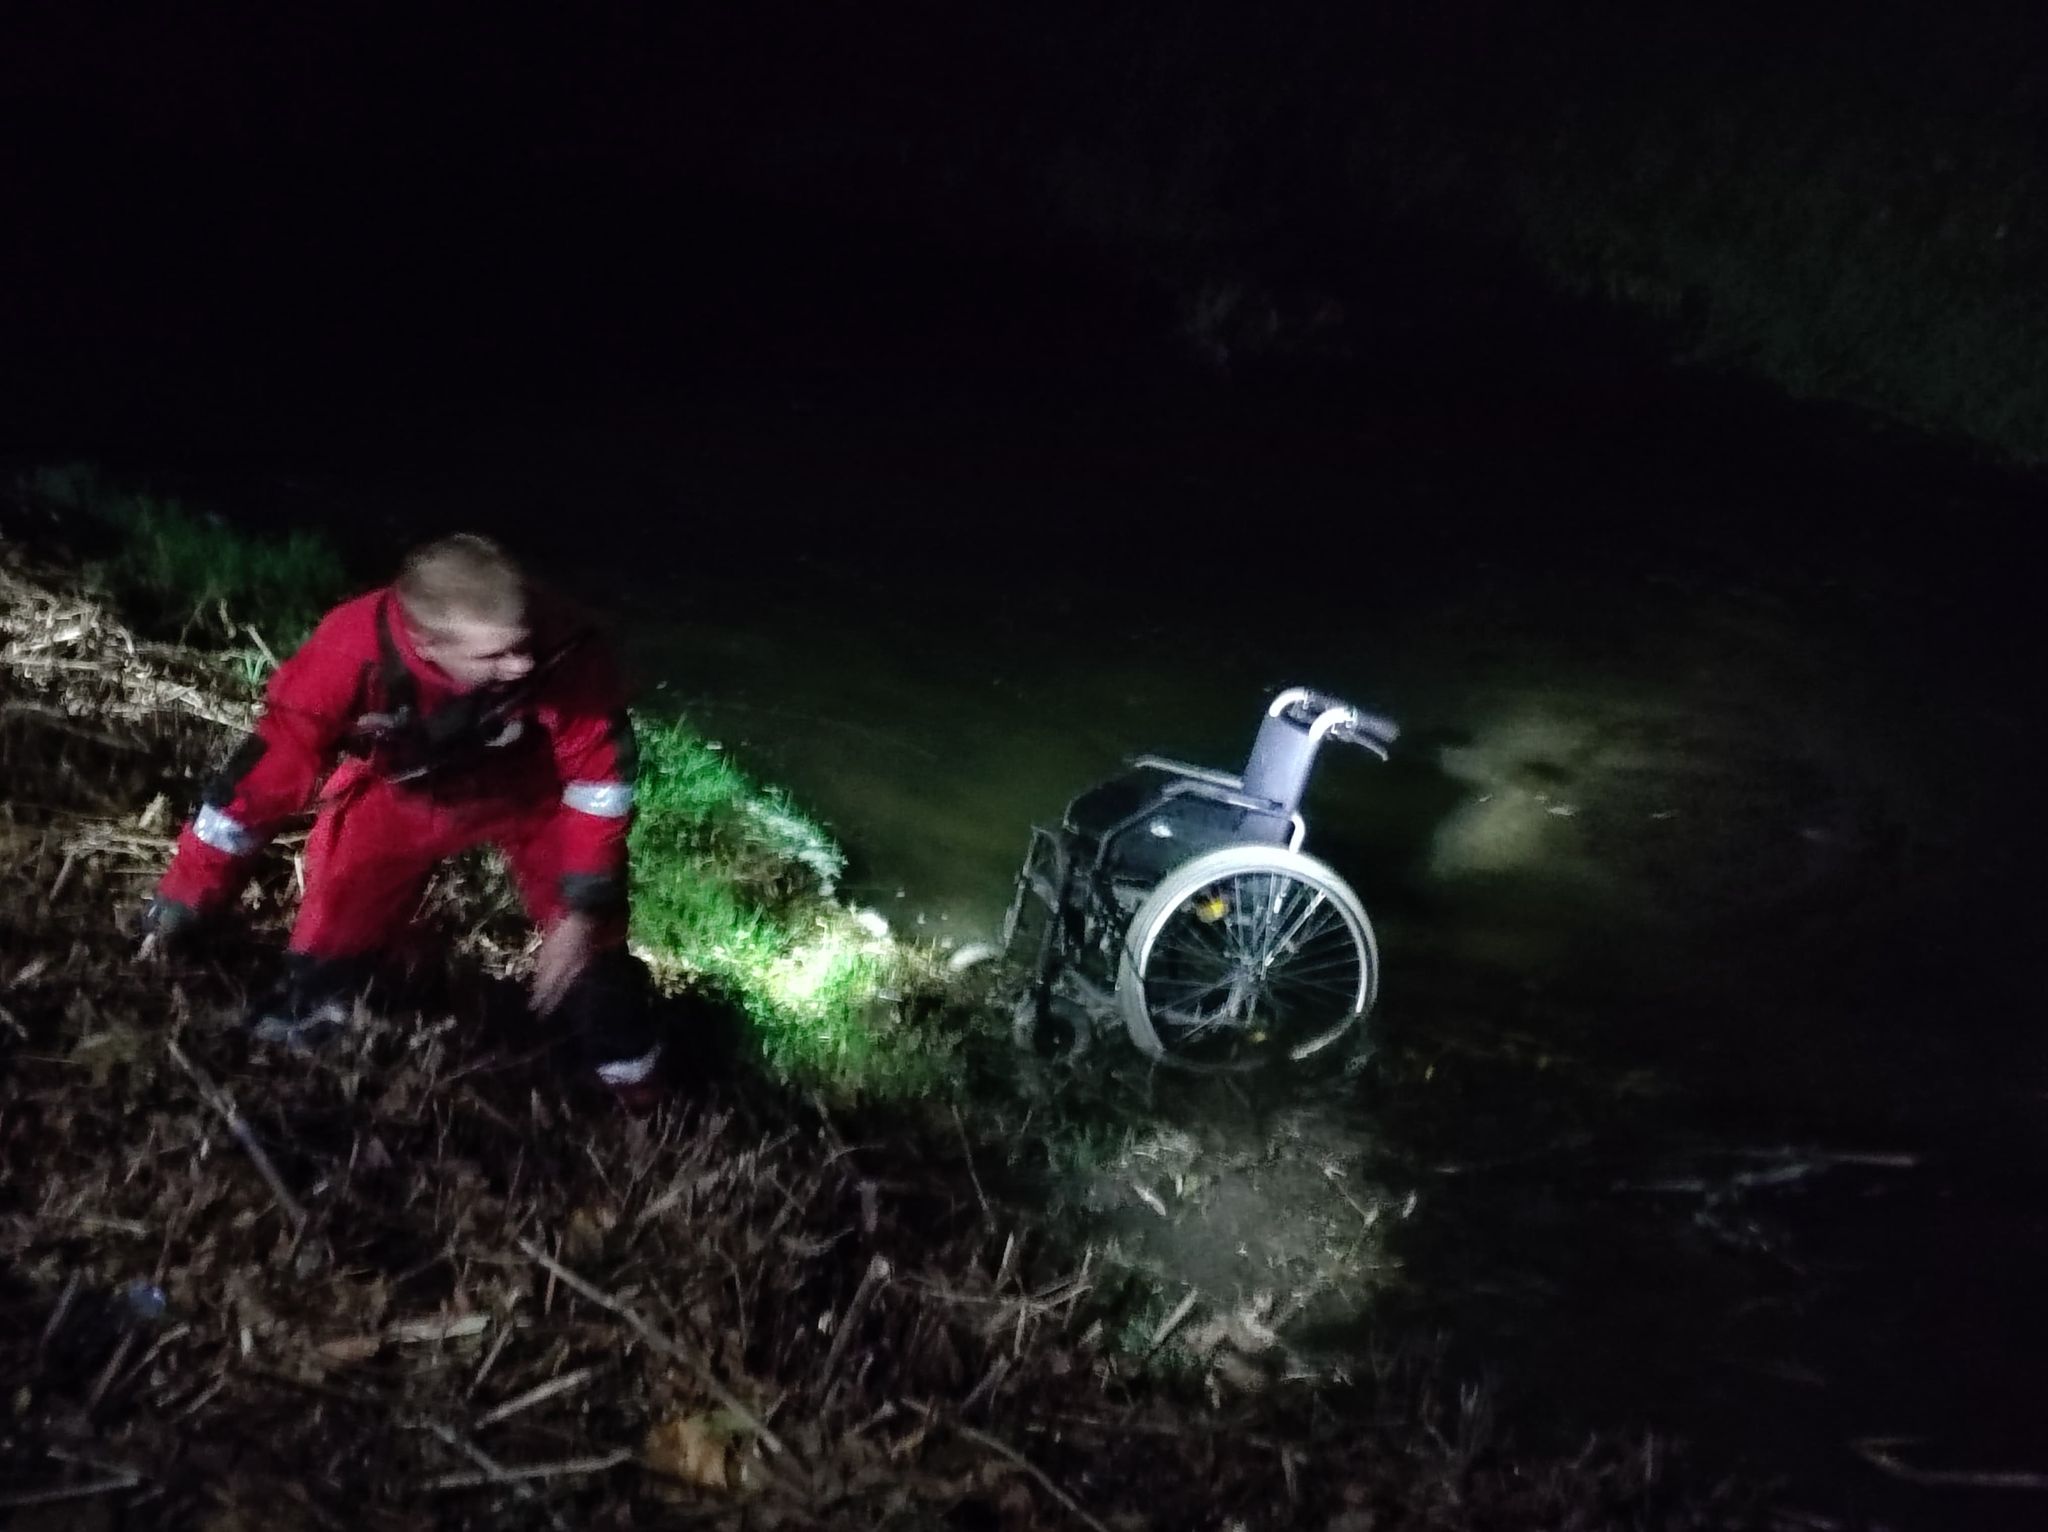 Dramatyczna akcja ratunkowa. W rzece znajdował się mężczyzna bez nóg, obok leżał wózek inwalidzki (zdjęcia)